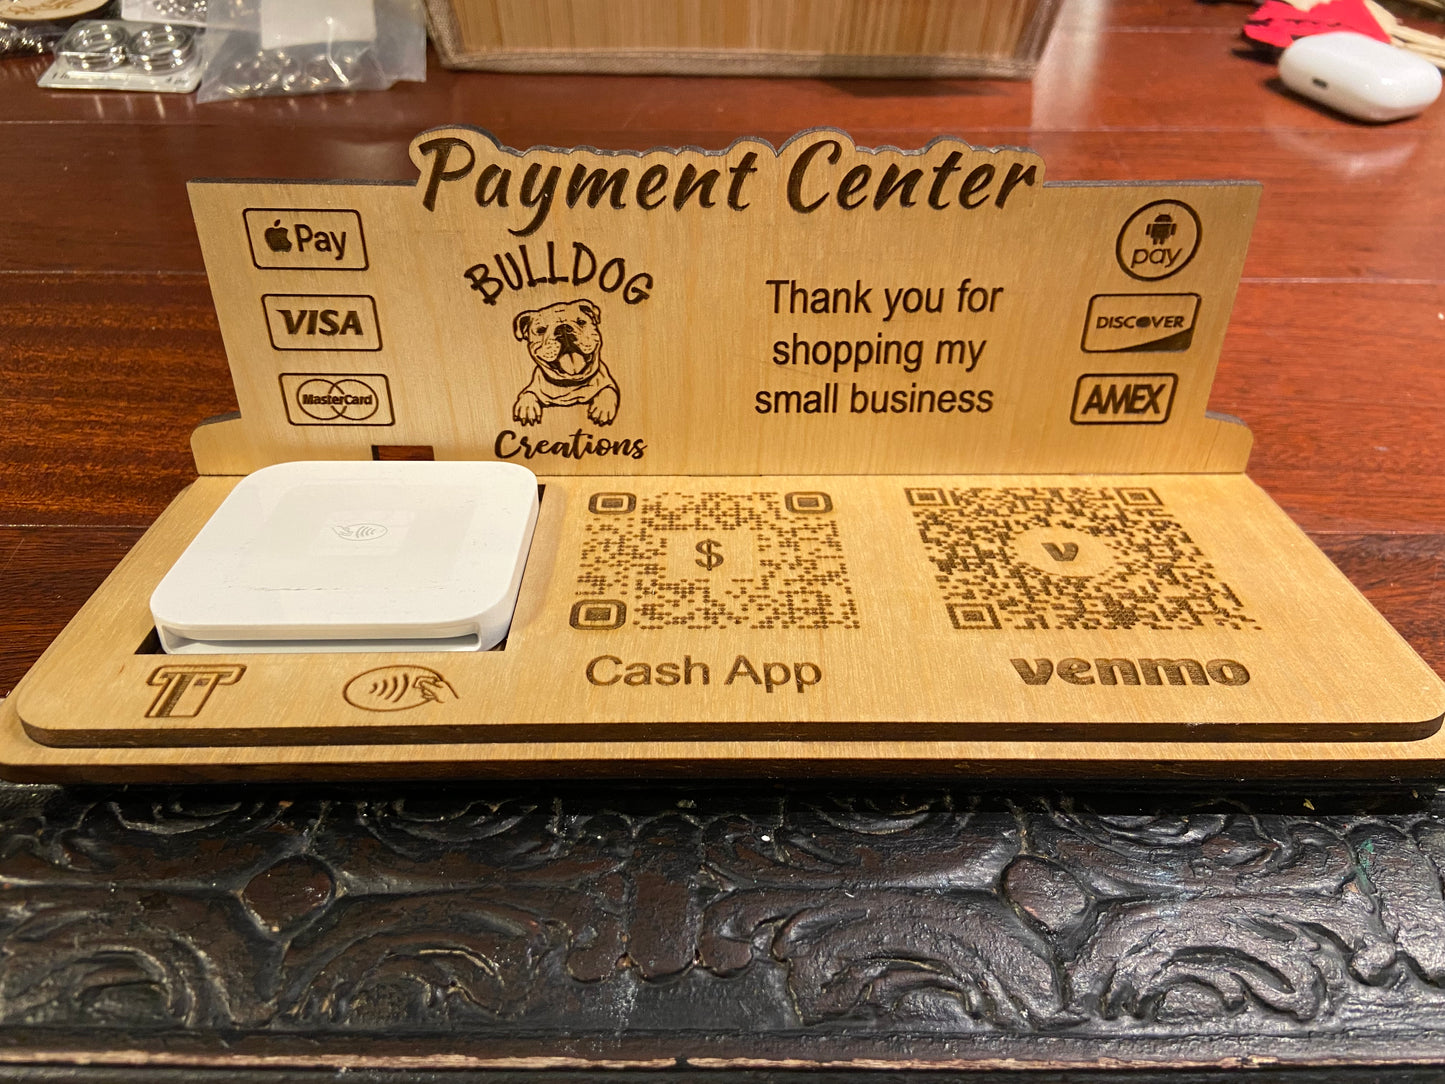 Payment center